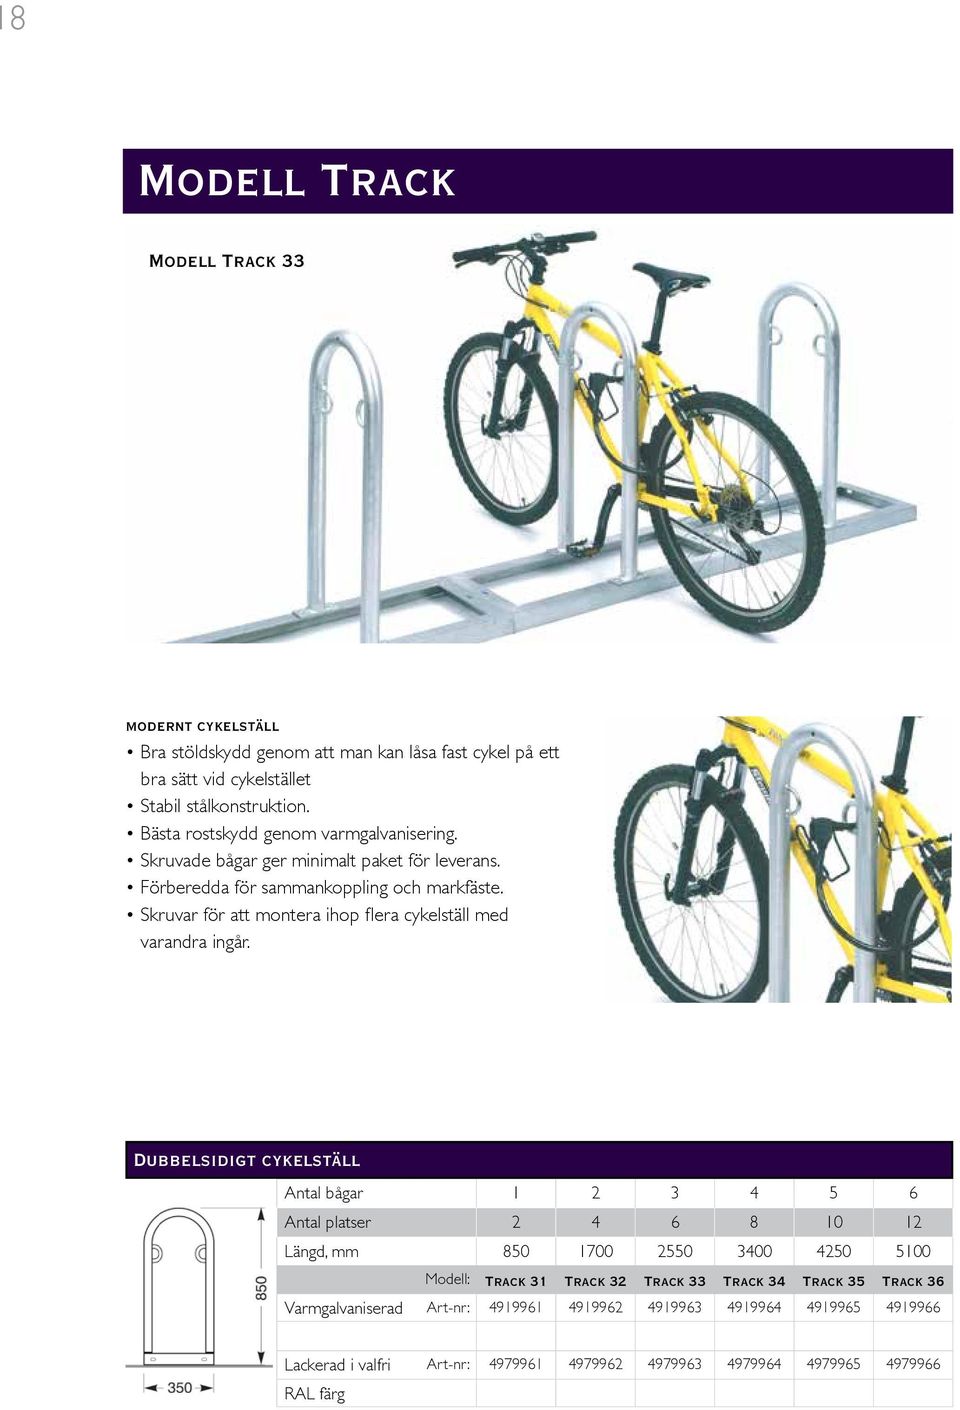 Skruvar för att montera ihop flera cykelställ med varandra ingår.